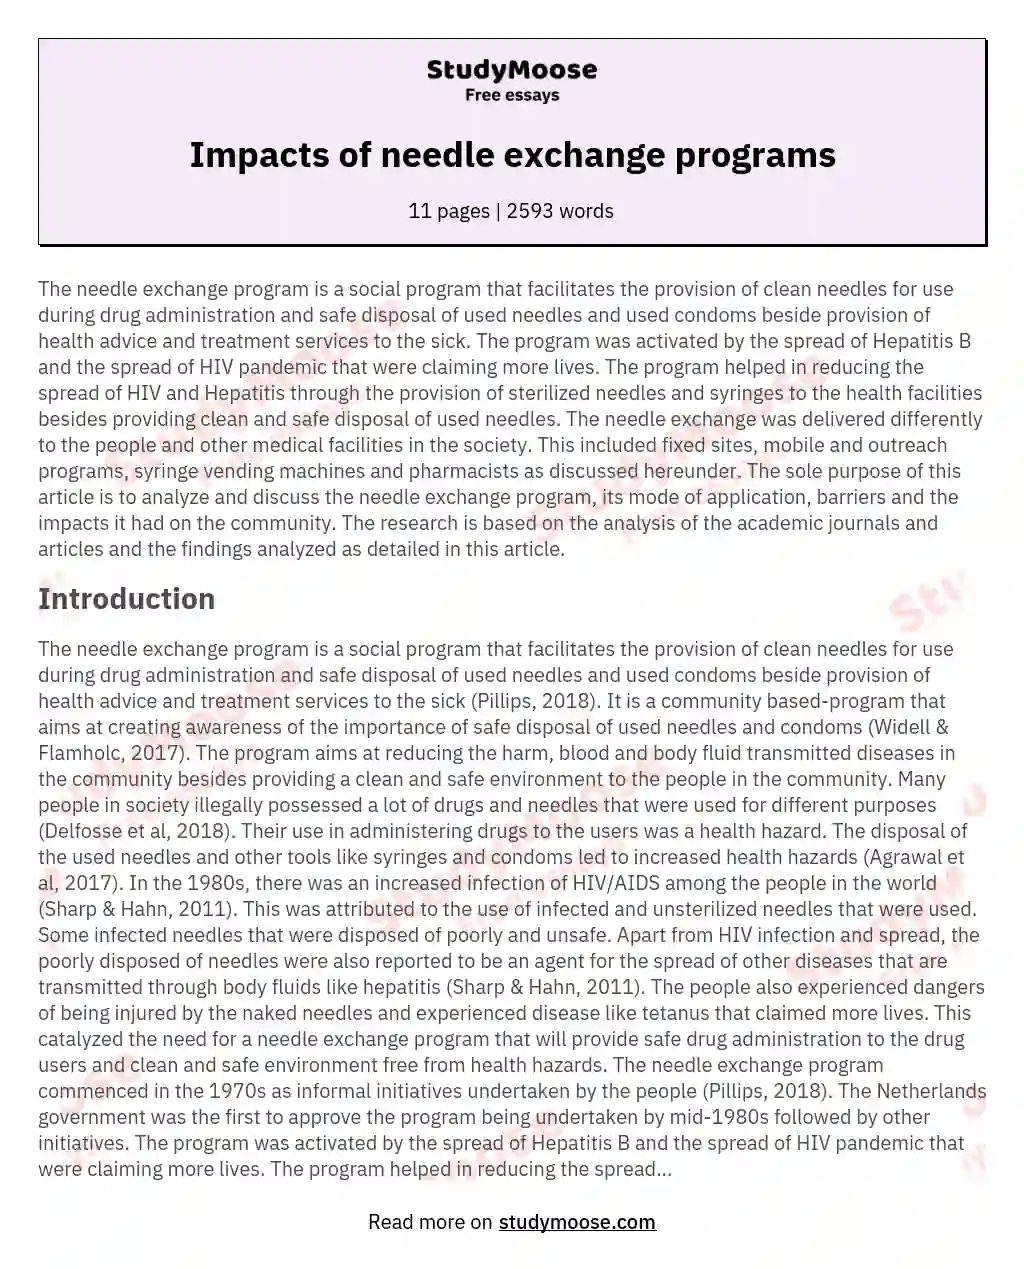 Impacts of needle exchange programs essay